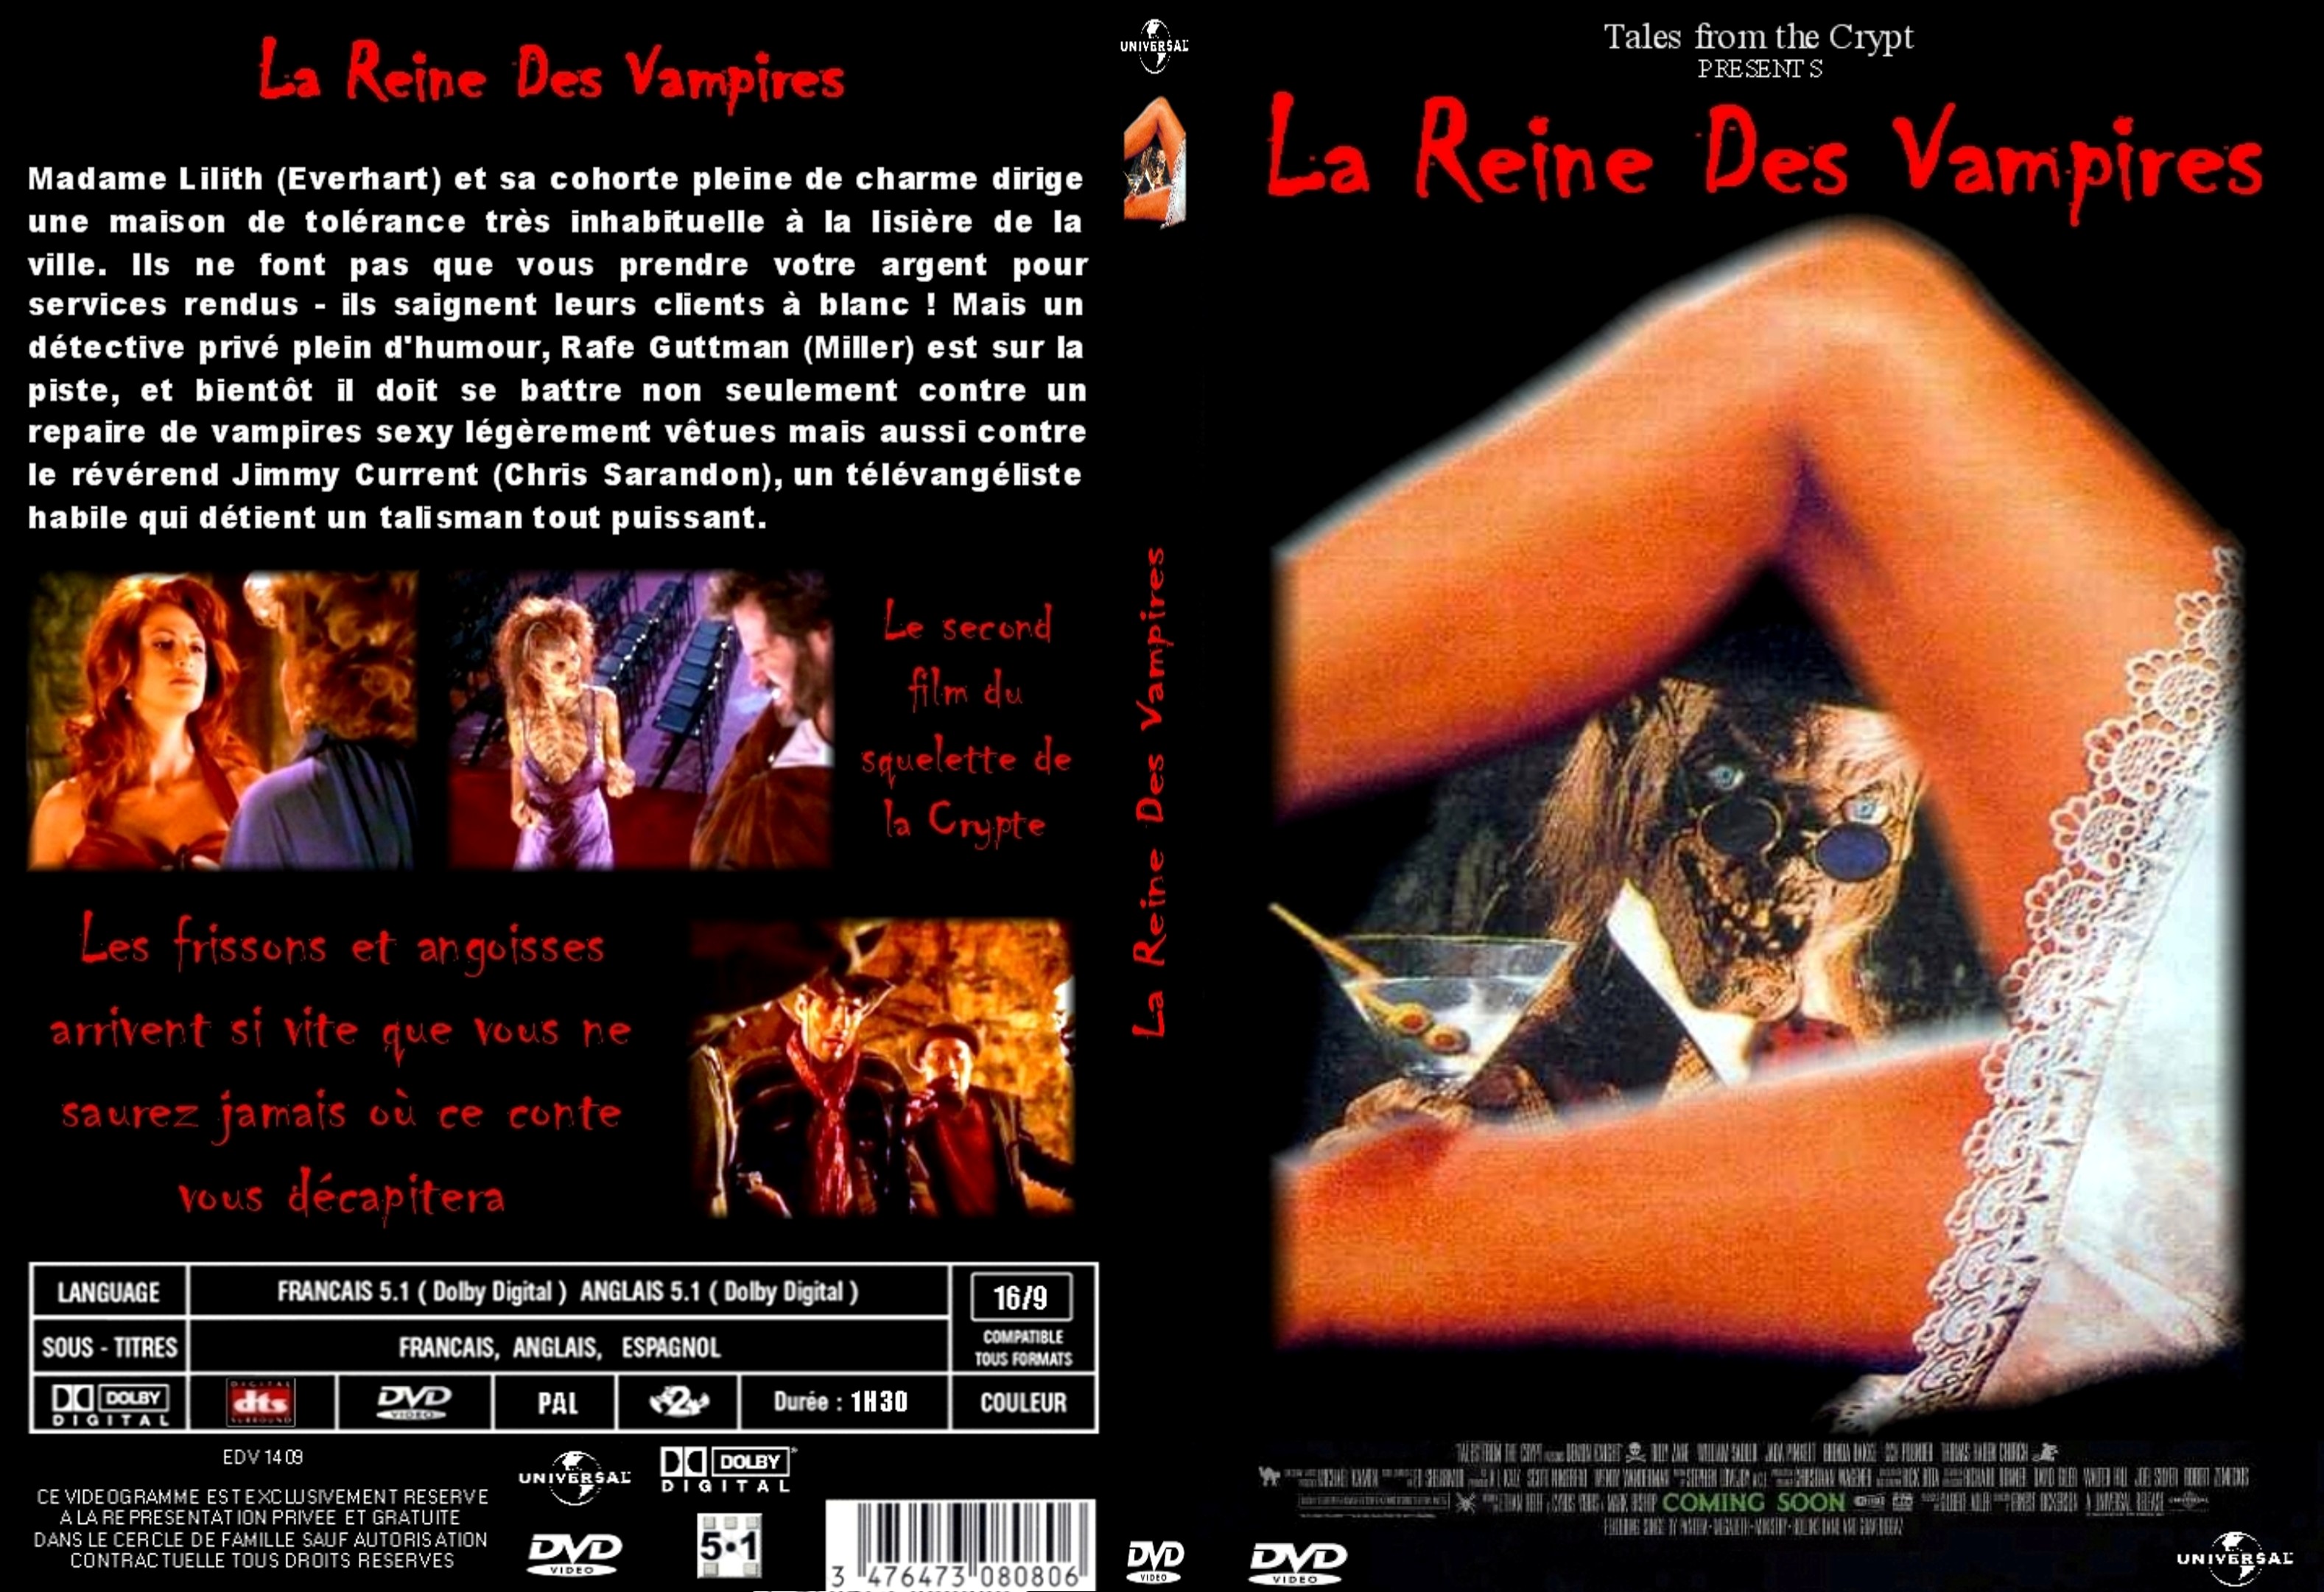 Jaquette DVD La reine des vampires custom - SLIM